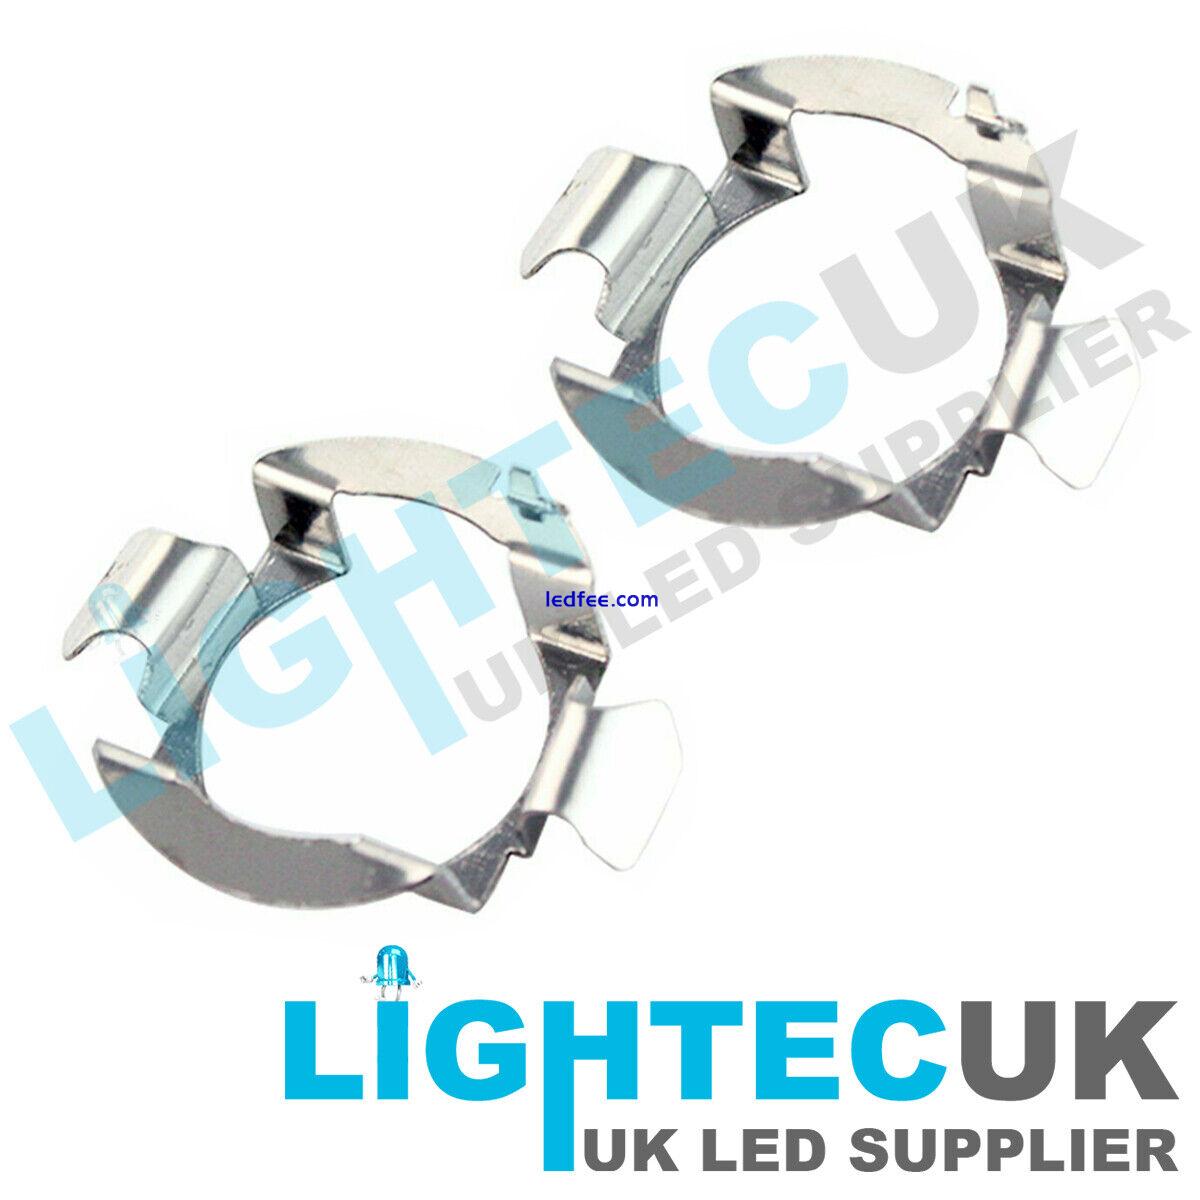 2 LIGHTEC UK UNIVERSAL H7 LED RETAINER BULB HOLDER CLIP ADAPTER HEAD LIGHT  4 